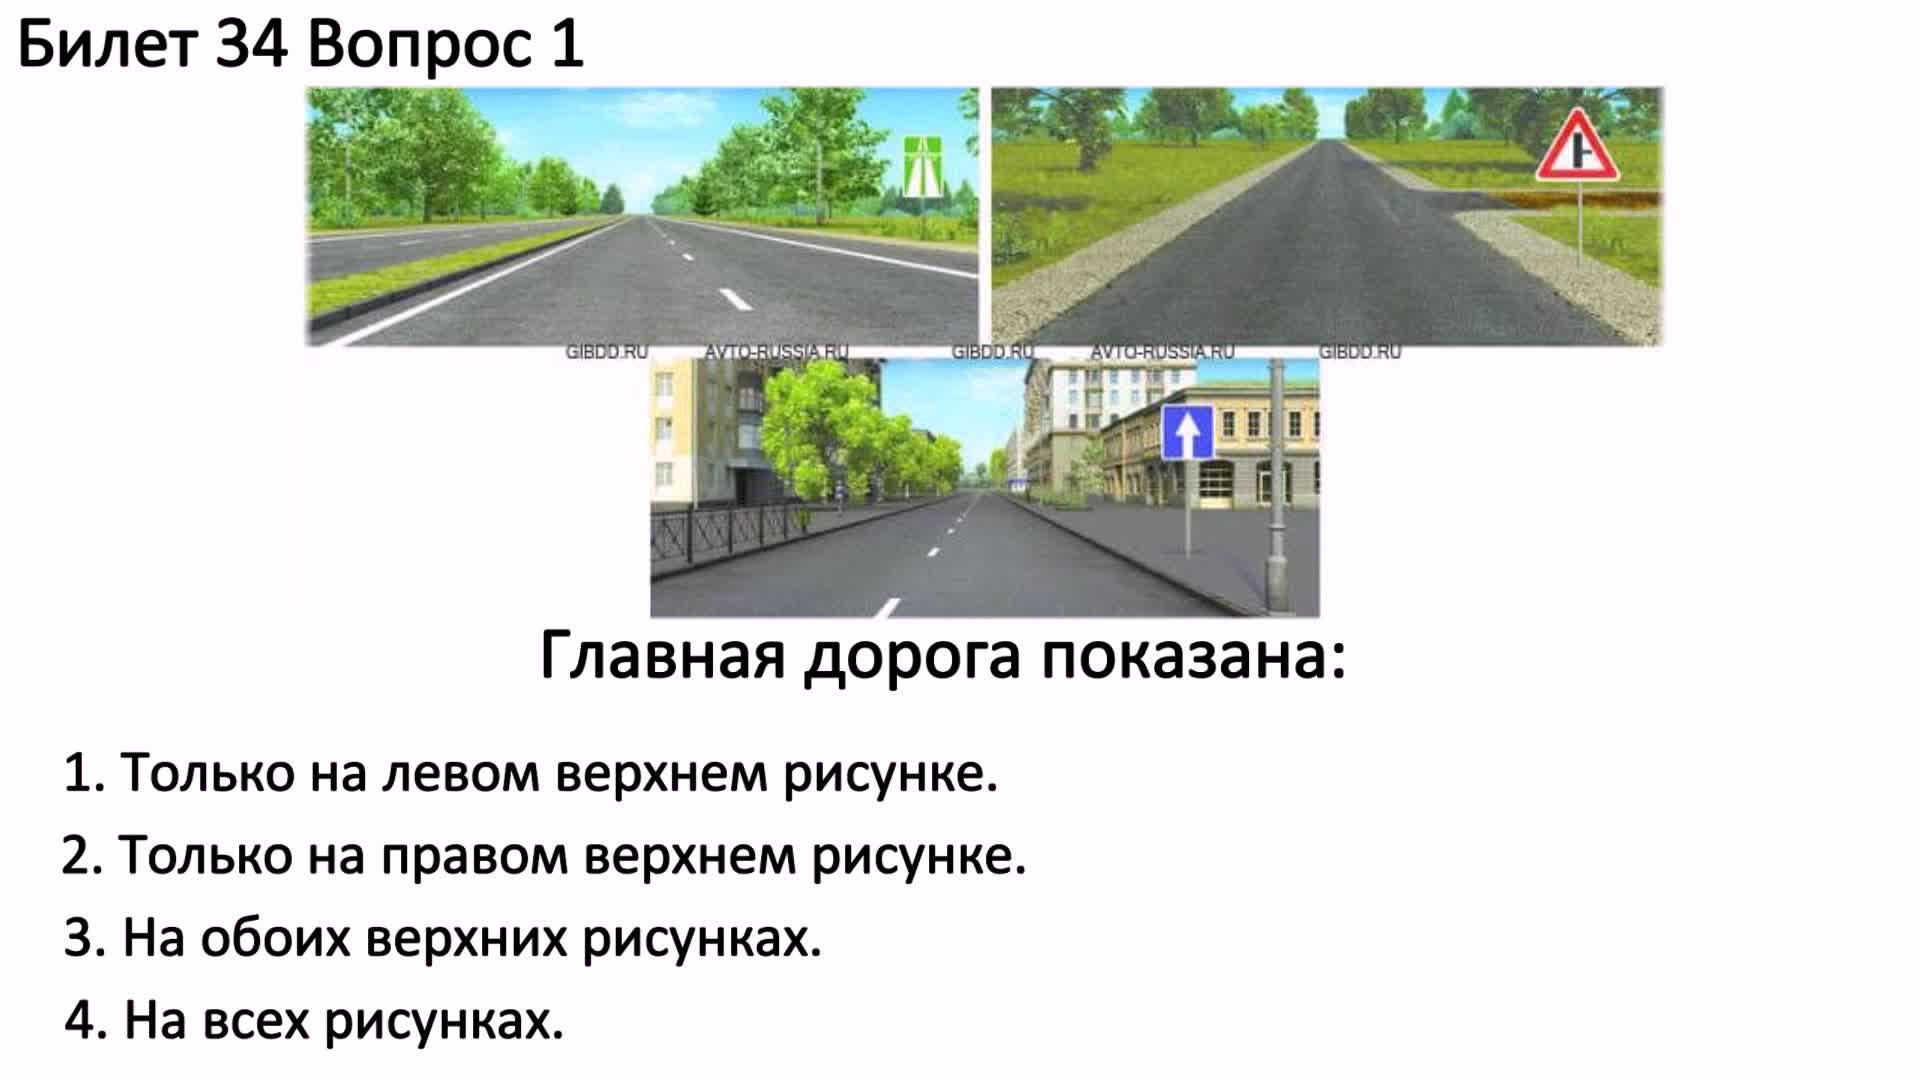 Главная дорога показана 3 рисунка. Главная дорога покщана. Глава ядорога показана. Главная дорога показана. Glavnaia Daroga.